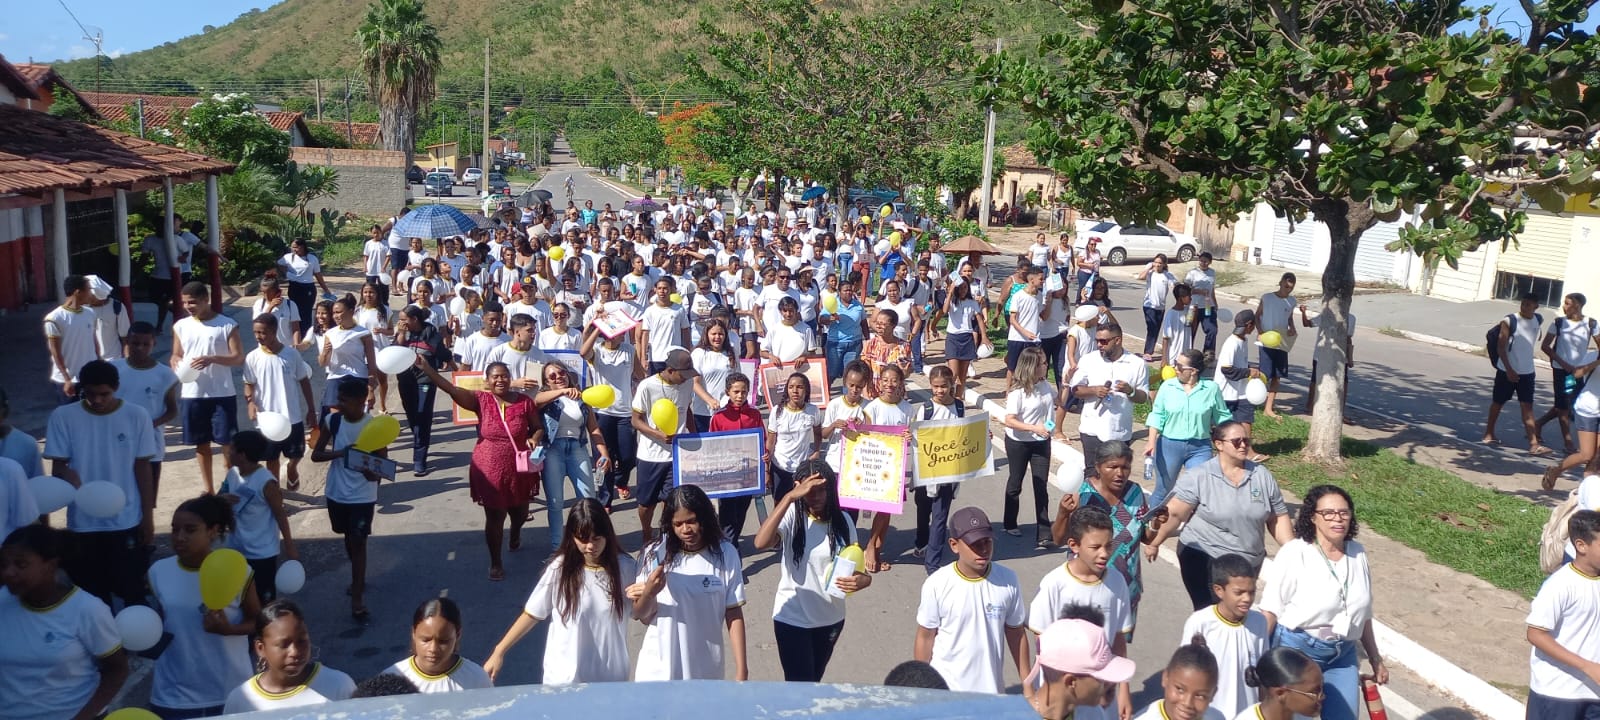 Após suicídios, comunidade de Monte Alegre (GO) promove “Caminhada em Valorização da Vida”